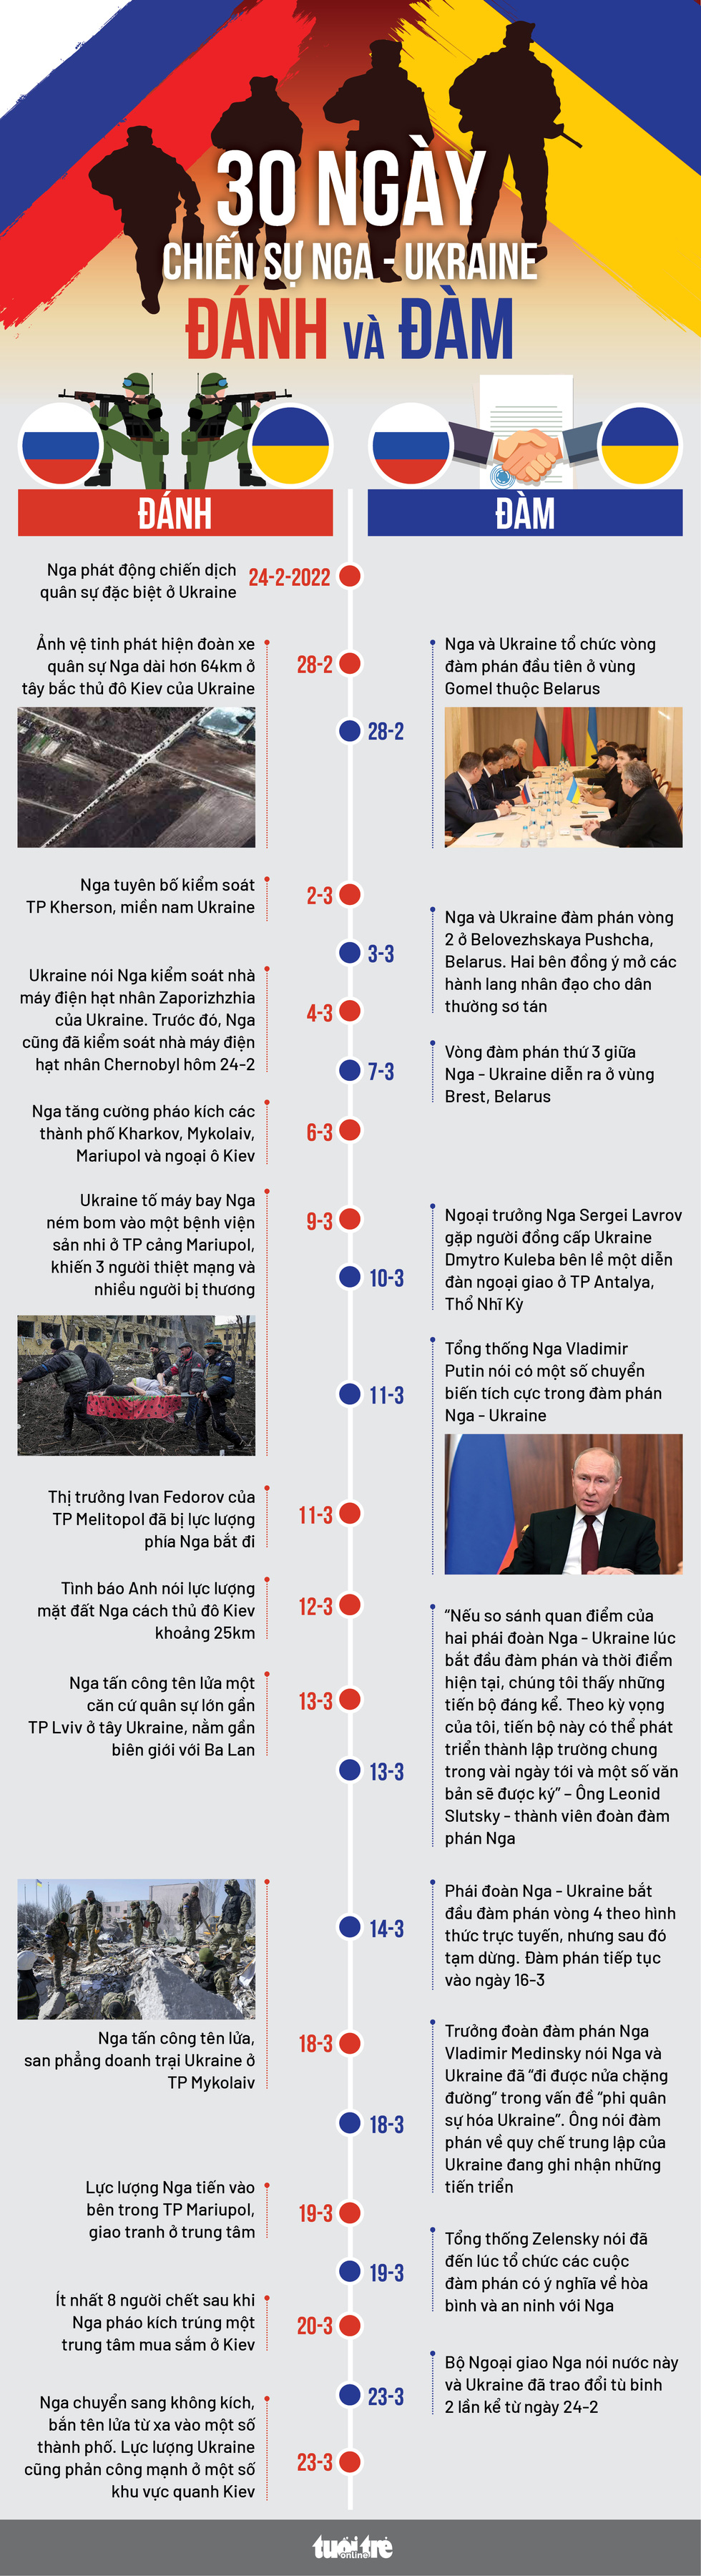 30 ngày chiến sự Nga - Ukraine: Vừa đánh vừa đàm - Ảnh 2.